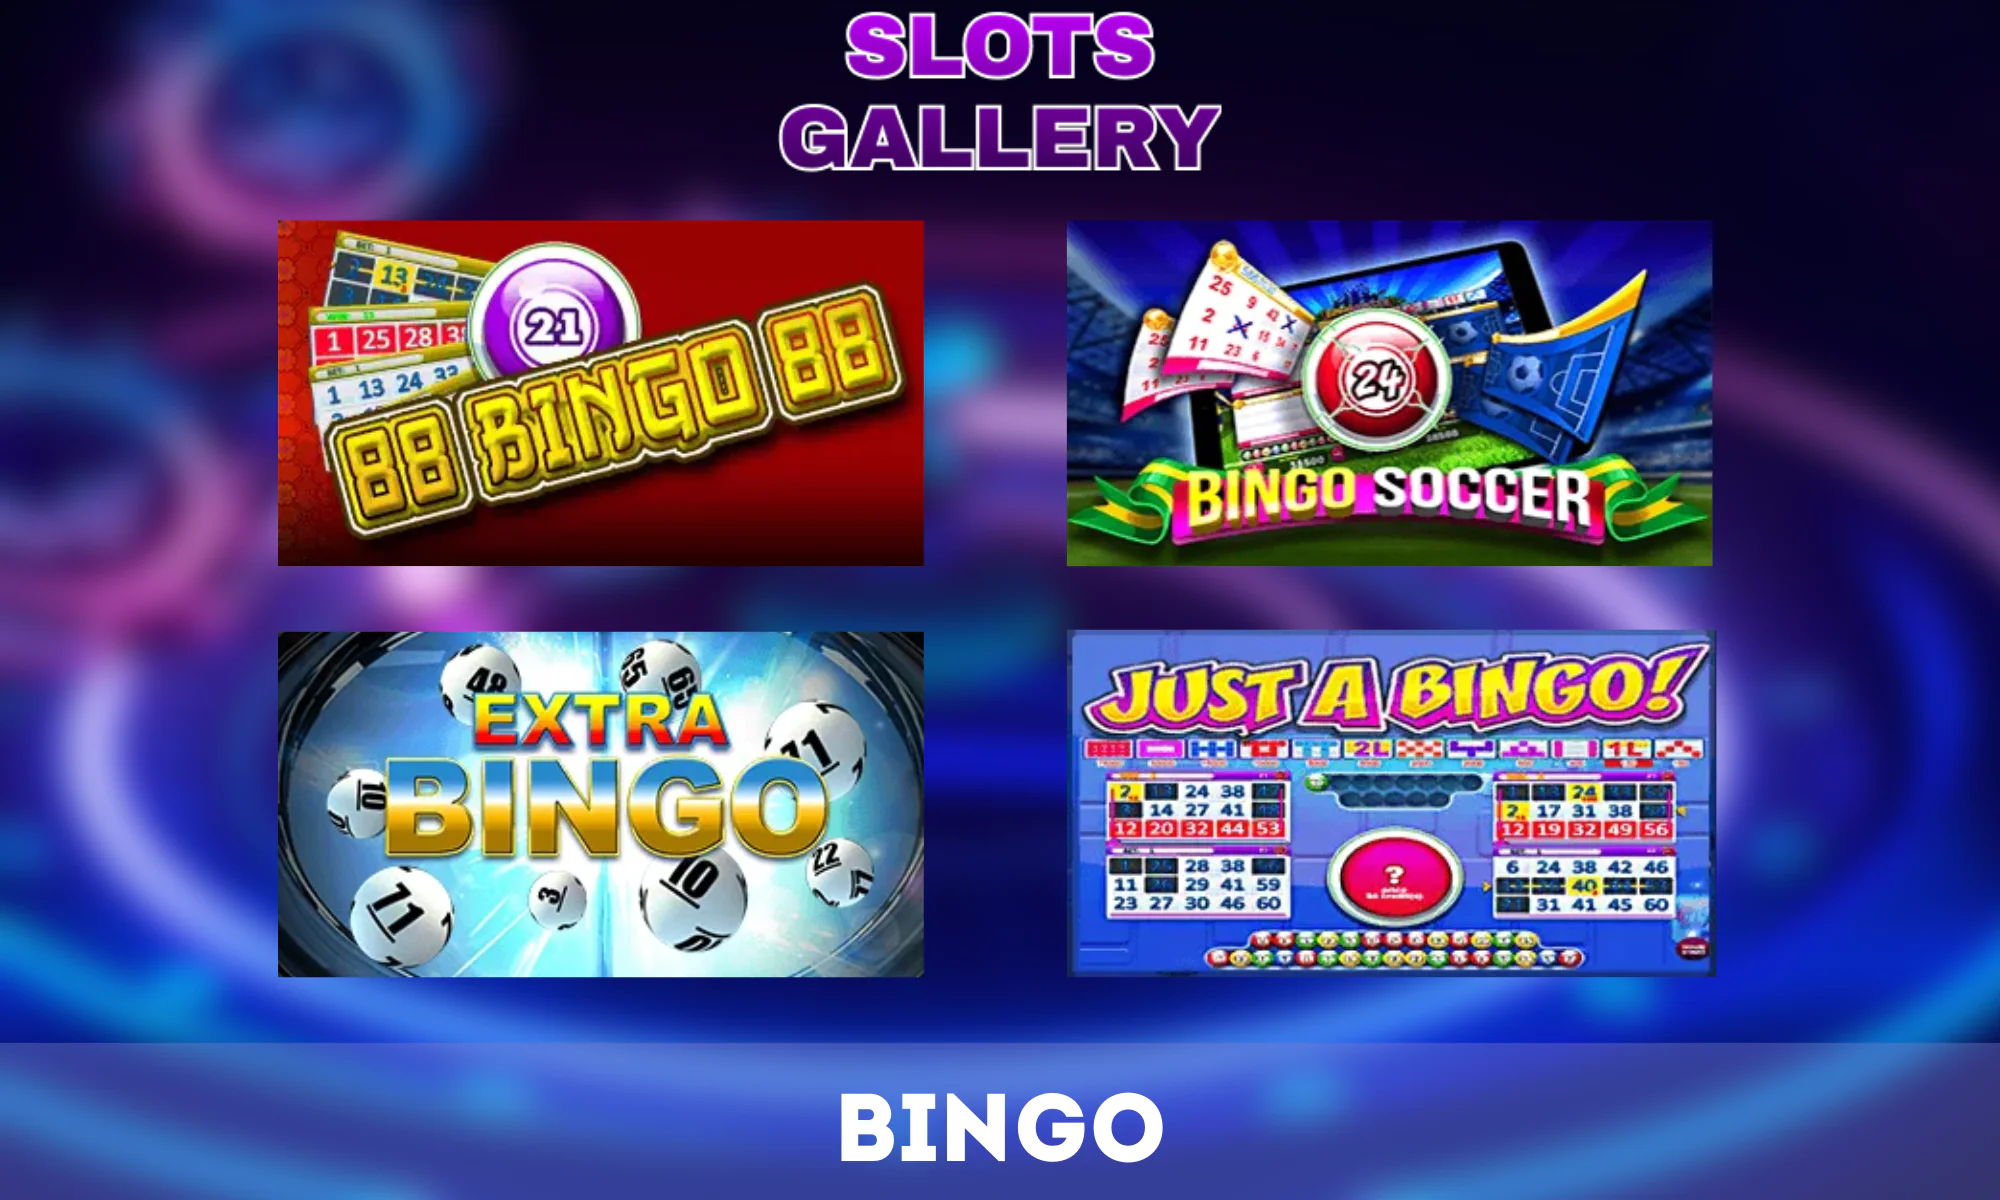 O Slots Gallery oferece uma variedade de jogos de bingo